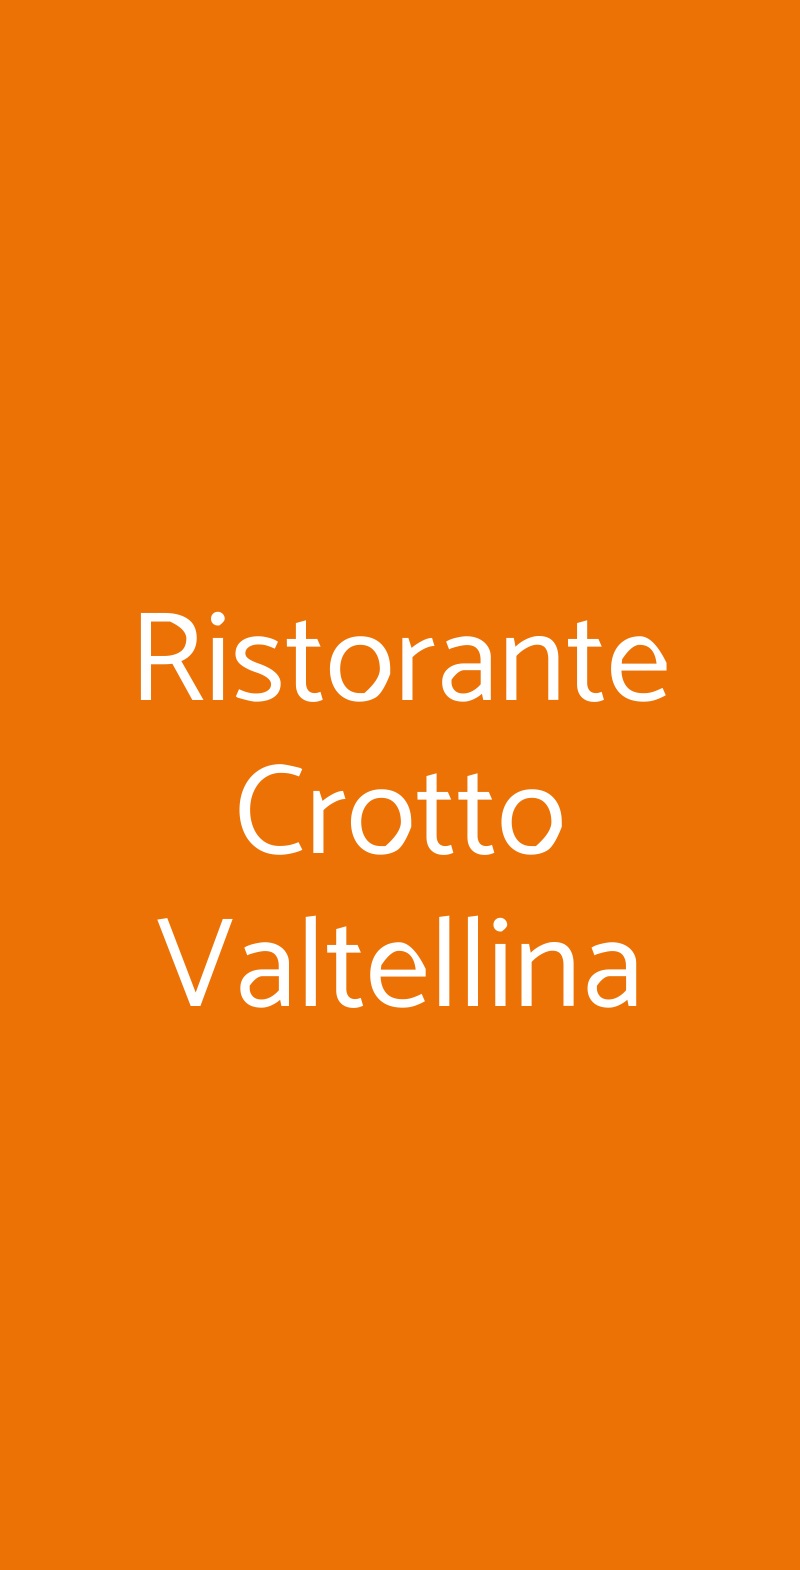 Ristorante Crotto Valtellina Malnate menù 1 pagina